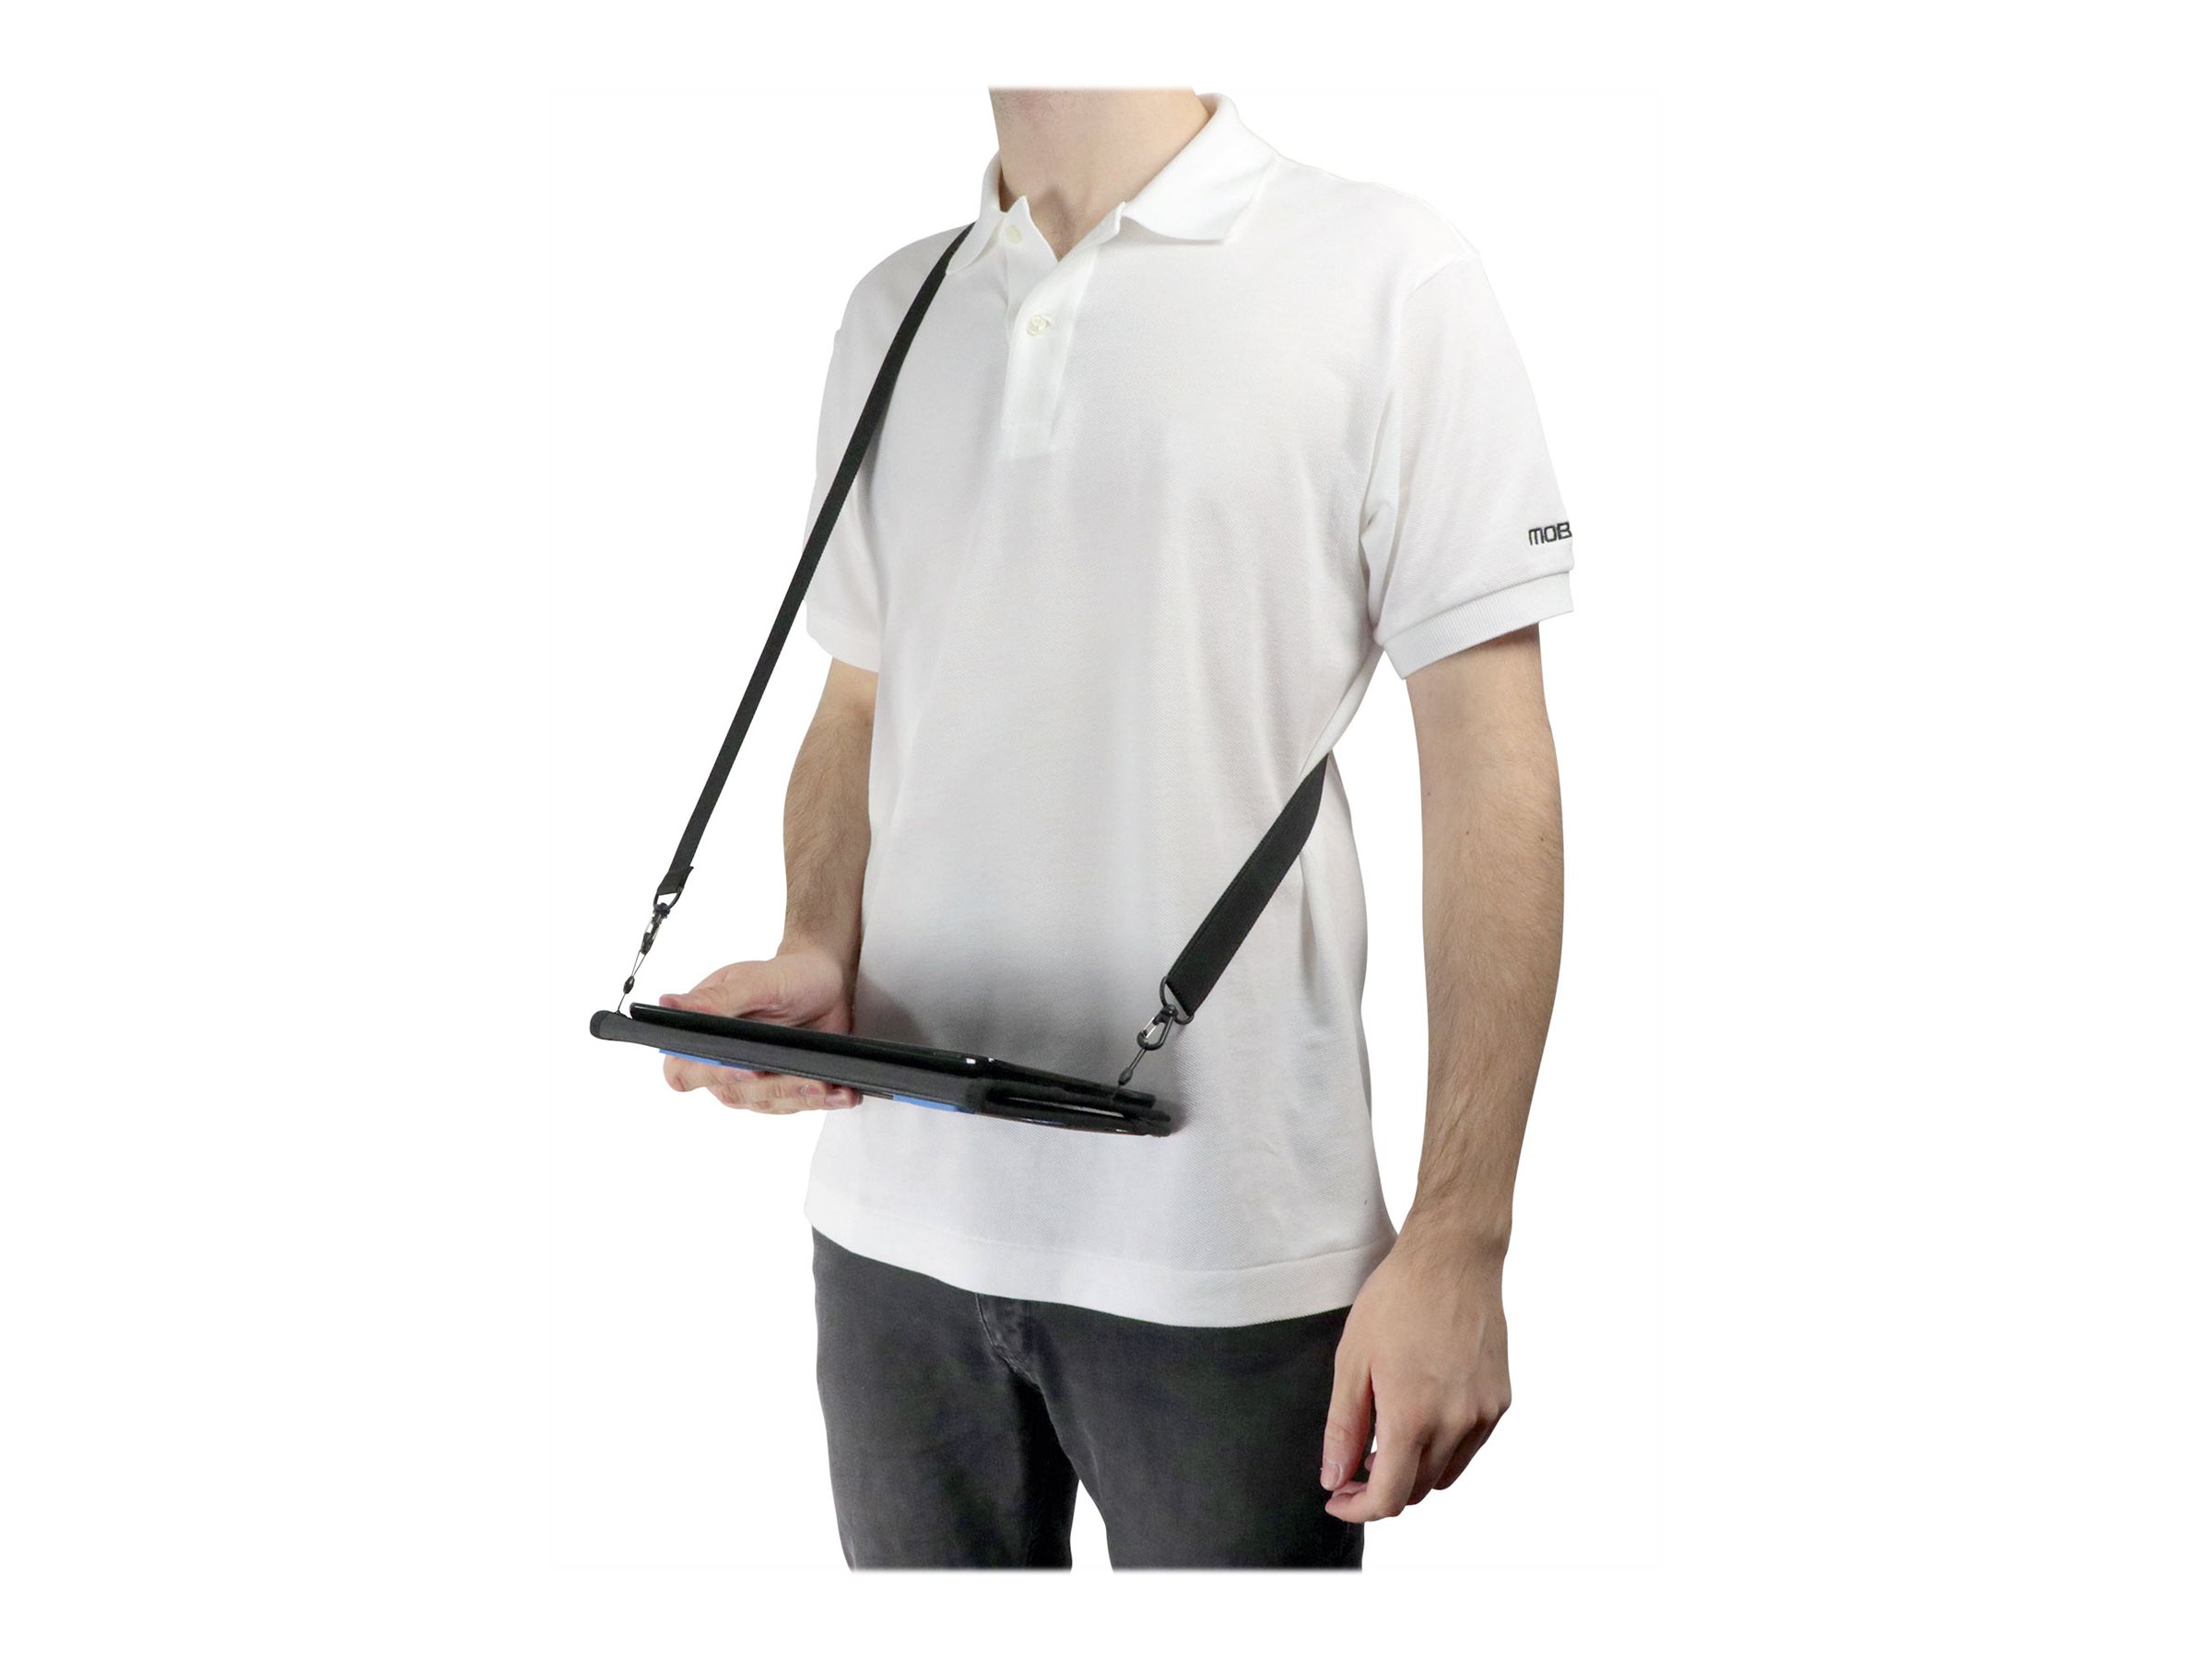 Mobilis ACTIV - Étui à rabat pour tablette - noir - pour Samsung Galaxy Tab S2 (9.7 ") - 051010 - Accessoires pour ordinateur portable et tablette